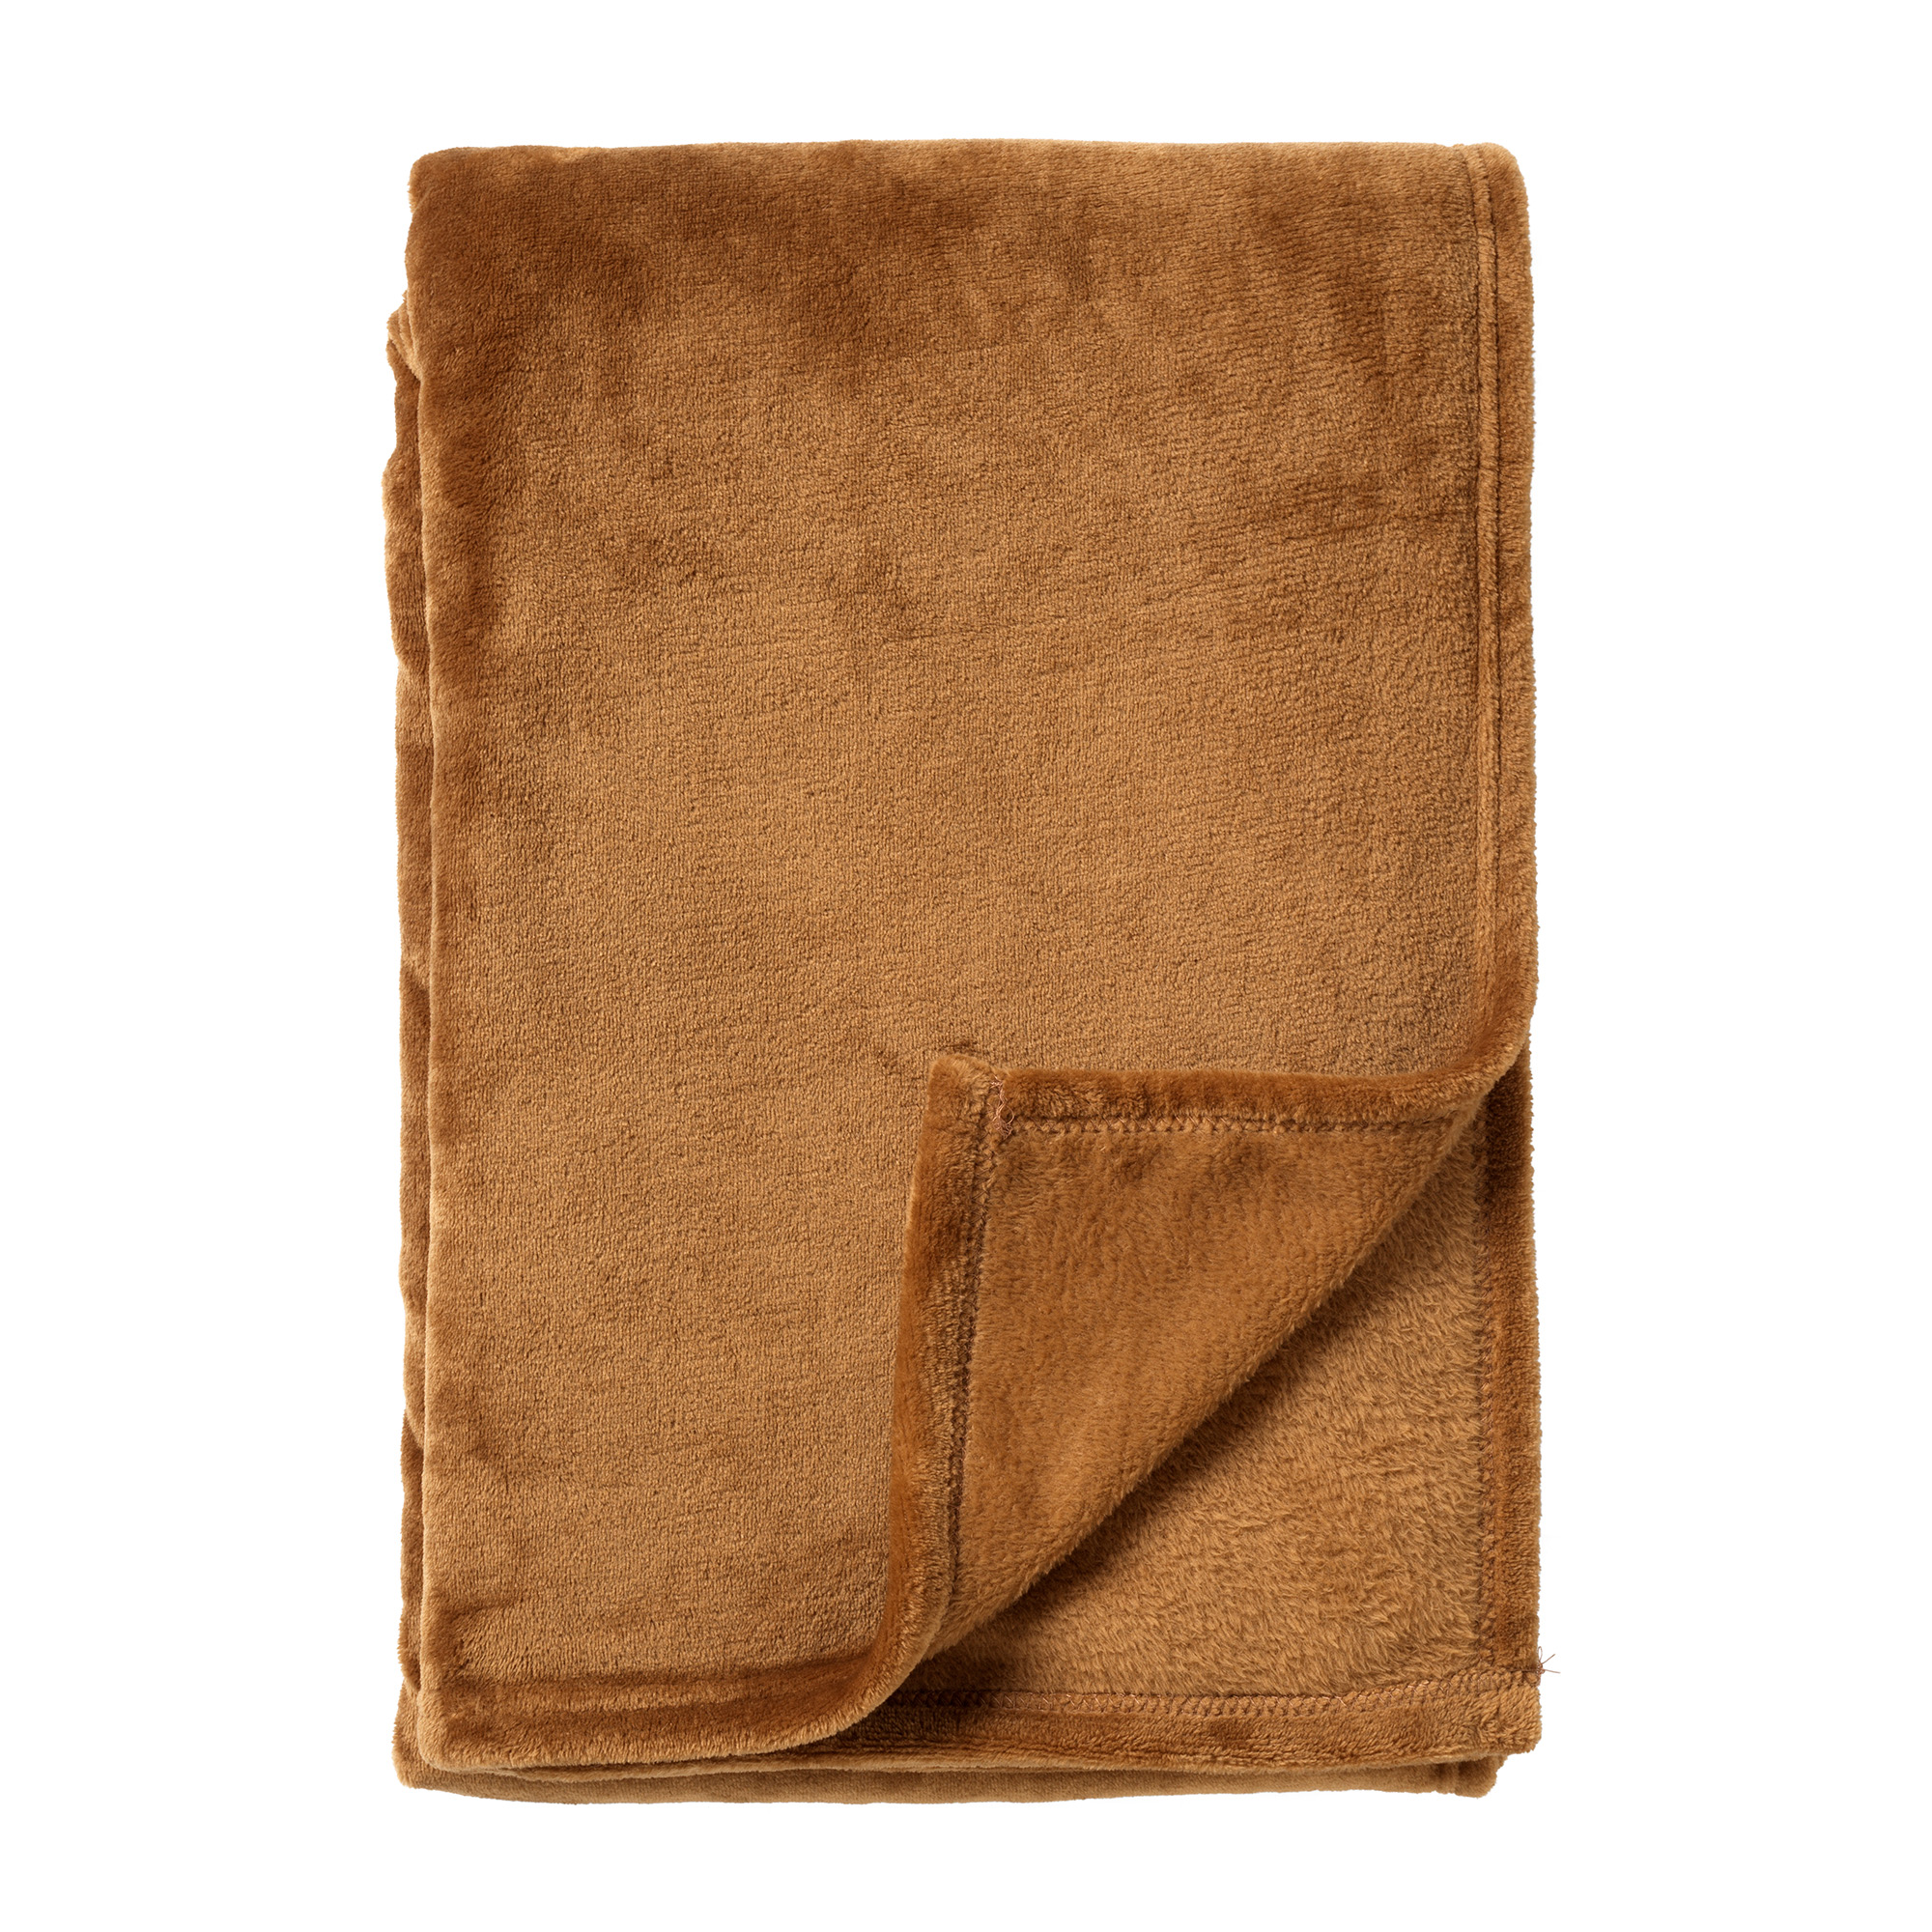 SIDNEY - Plaid 140x180 cm - Fleece deken van 100% gerecycled polyester – superzacht - Eco Line collectie - Tobacco Brown- bruin